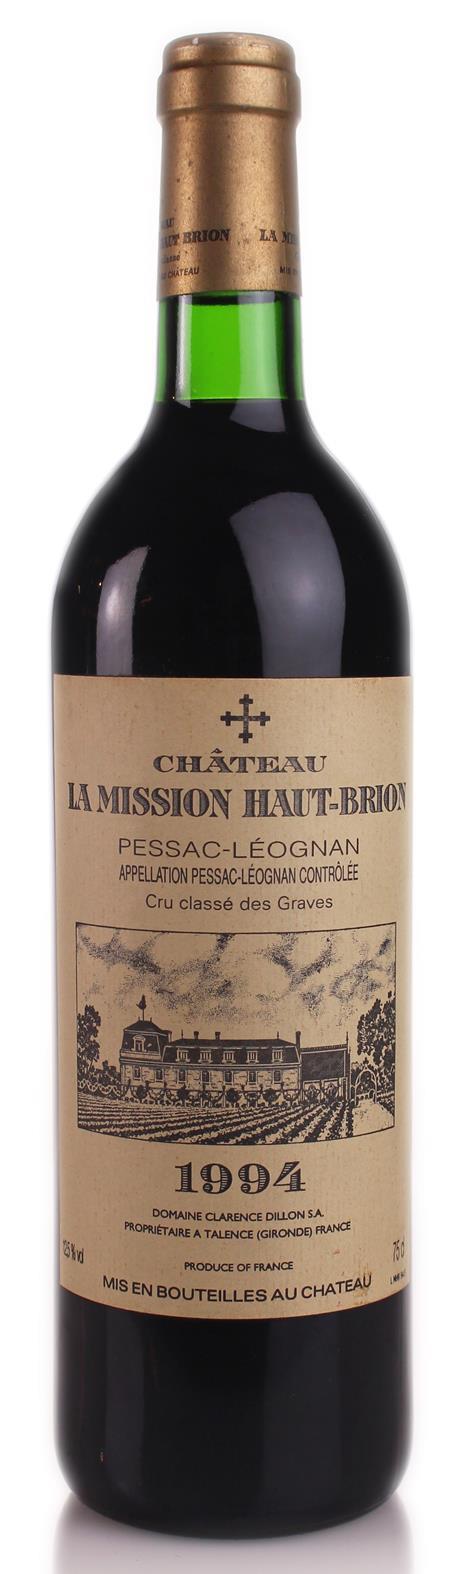 Chateau La Mission Haut Brion 1994 Graves, Grand Cru. Base of Neck. Good label. 1 bottle (75cl).